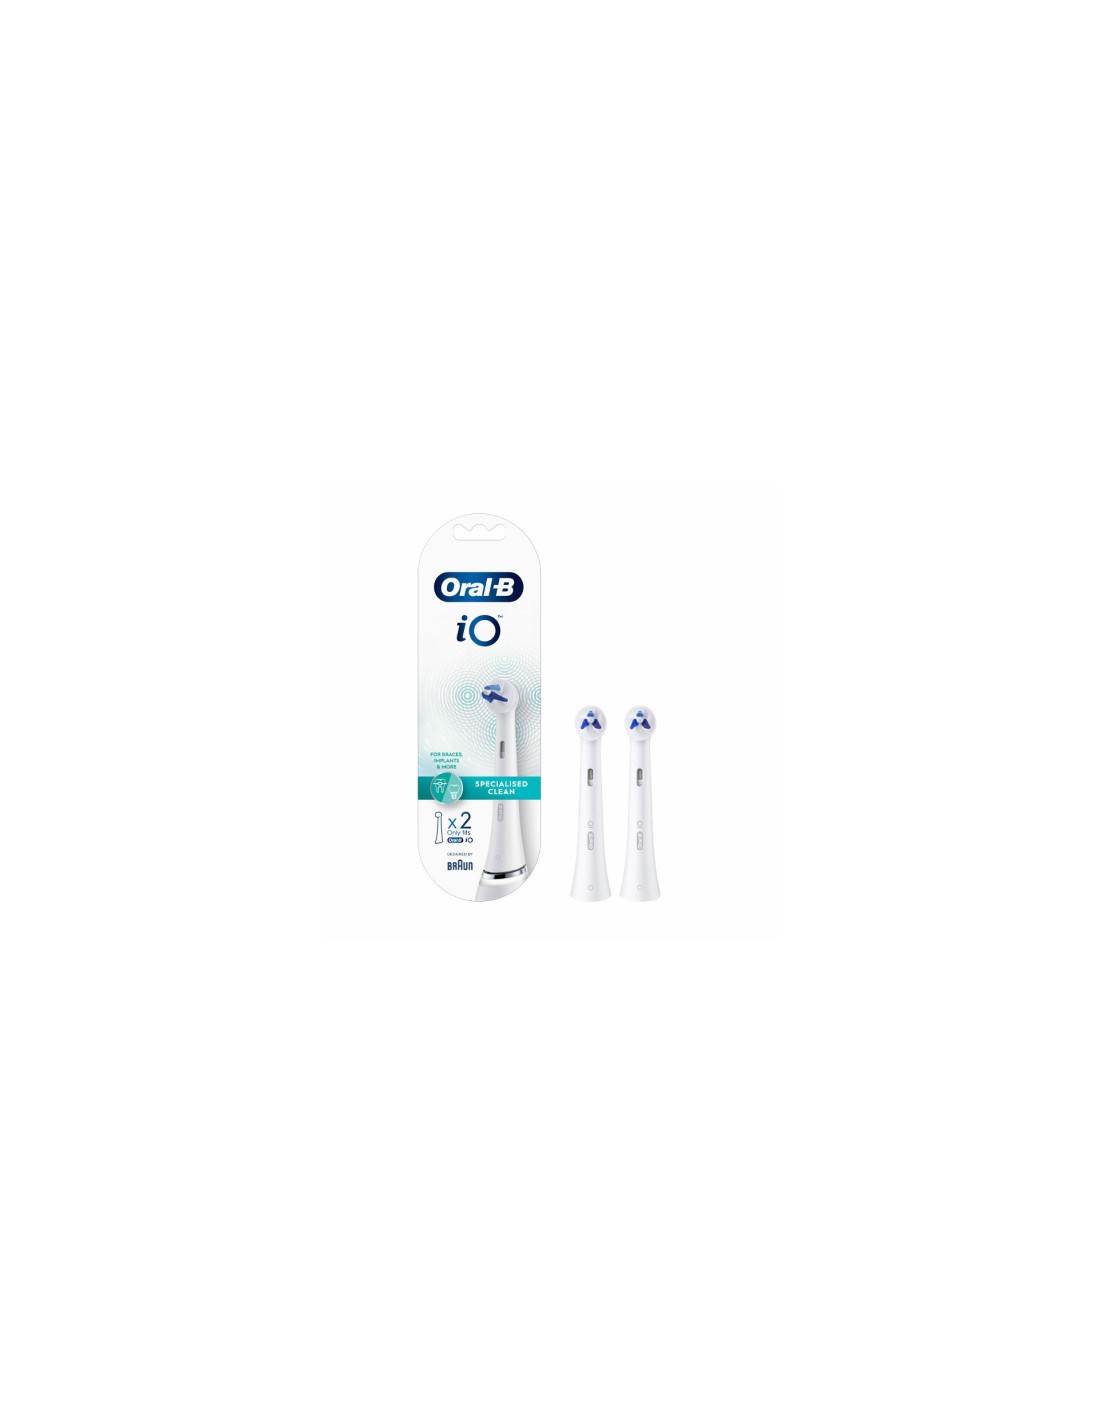 Comprar Oral B Recambio Cepillo Specialised Clean Io a precio online